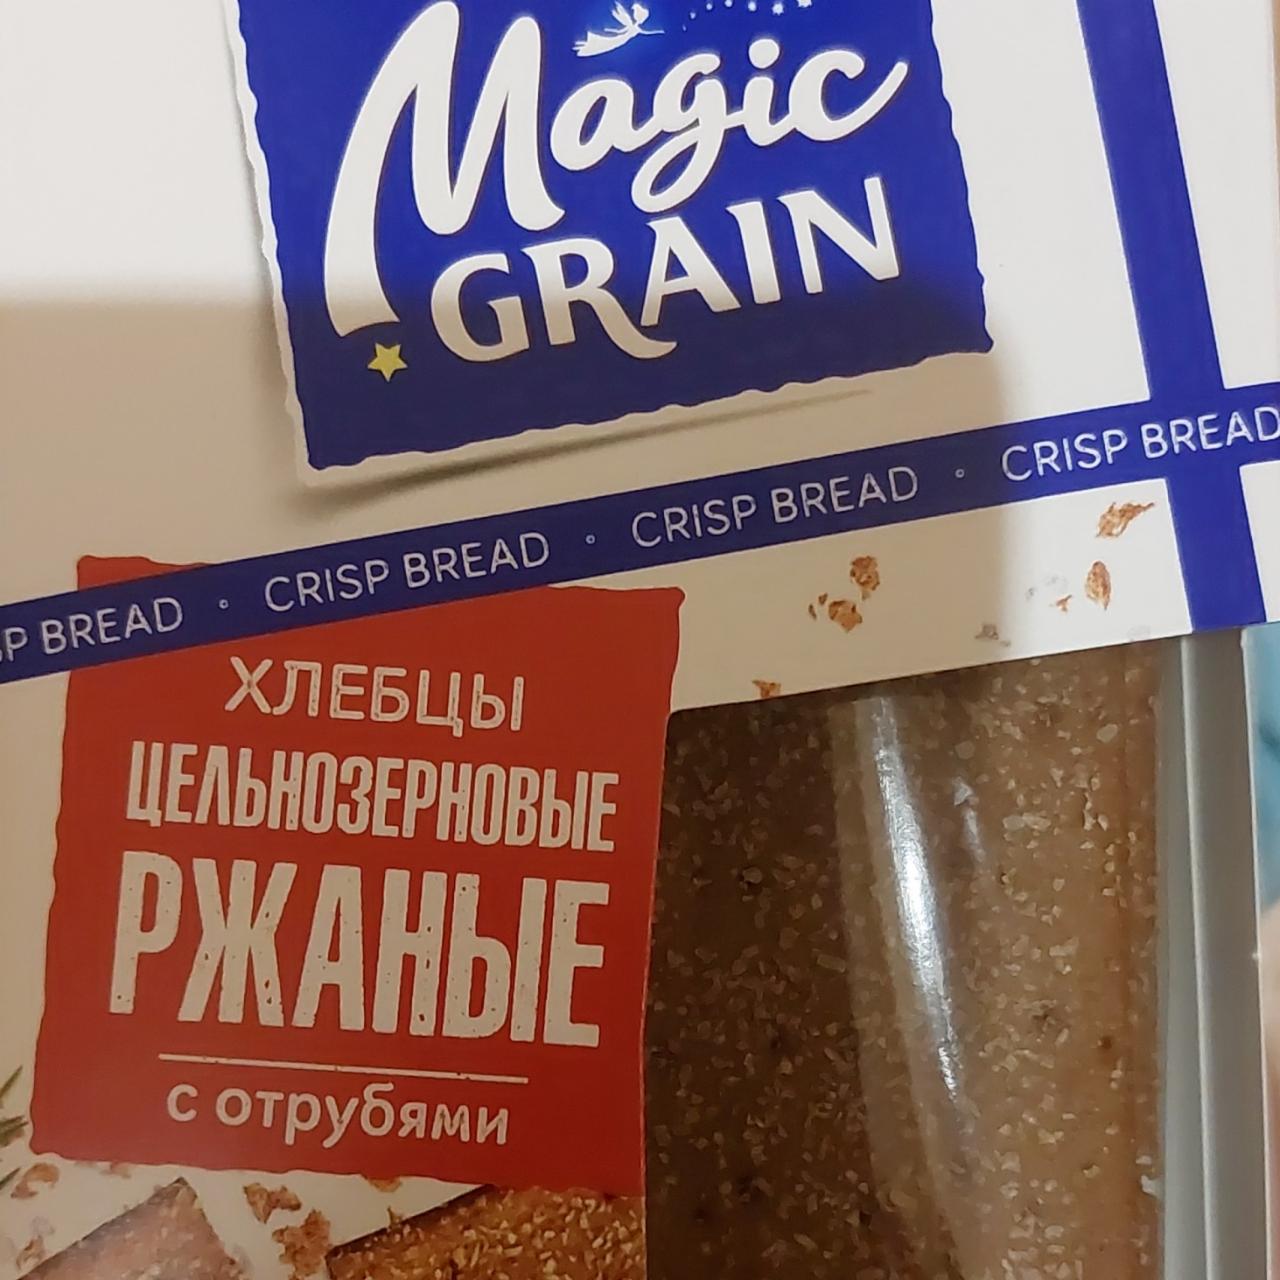 Фото - хлебцы цельнозерновые ржанные с отрубями Magic Grain